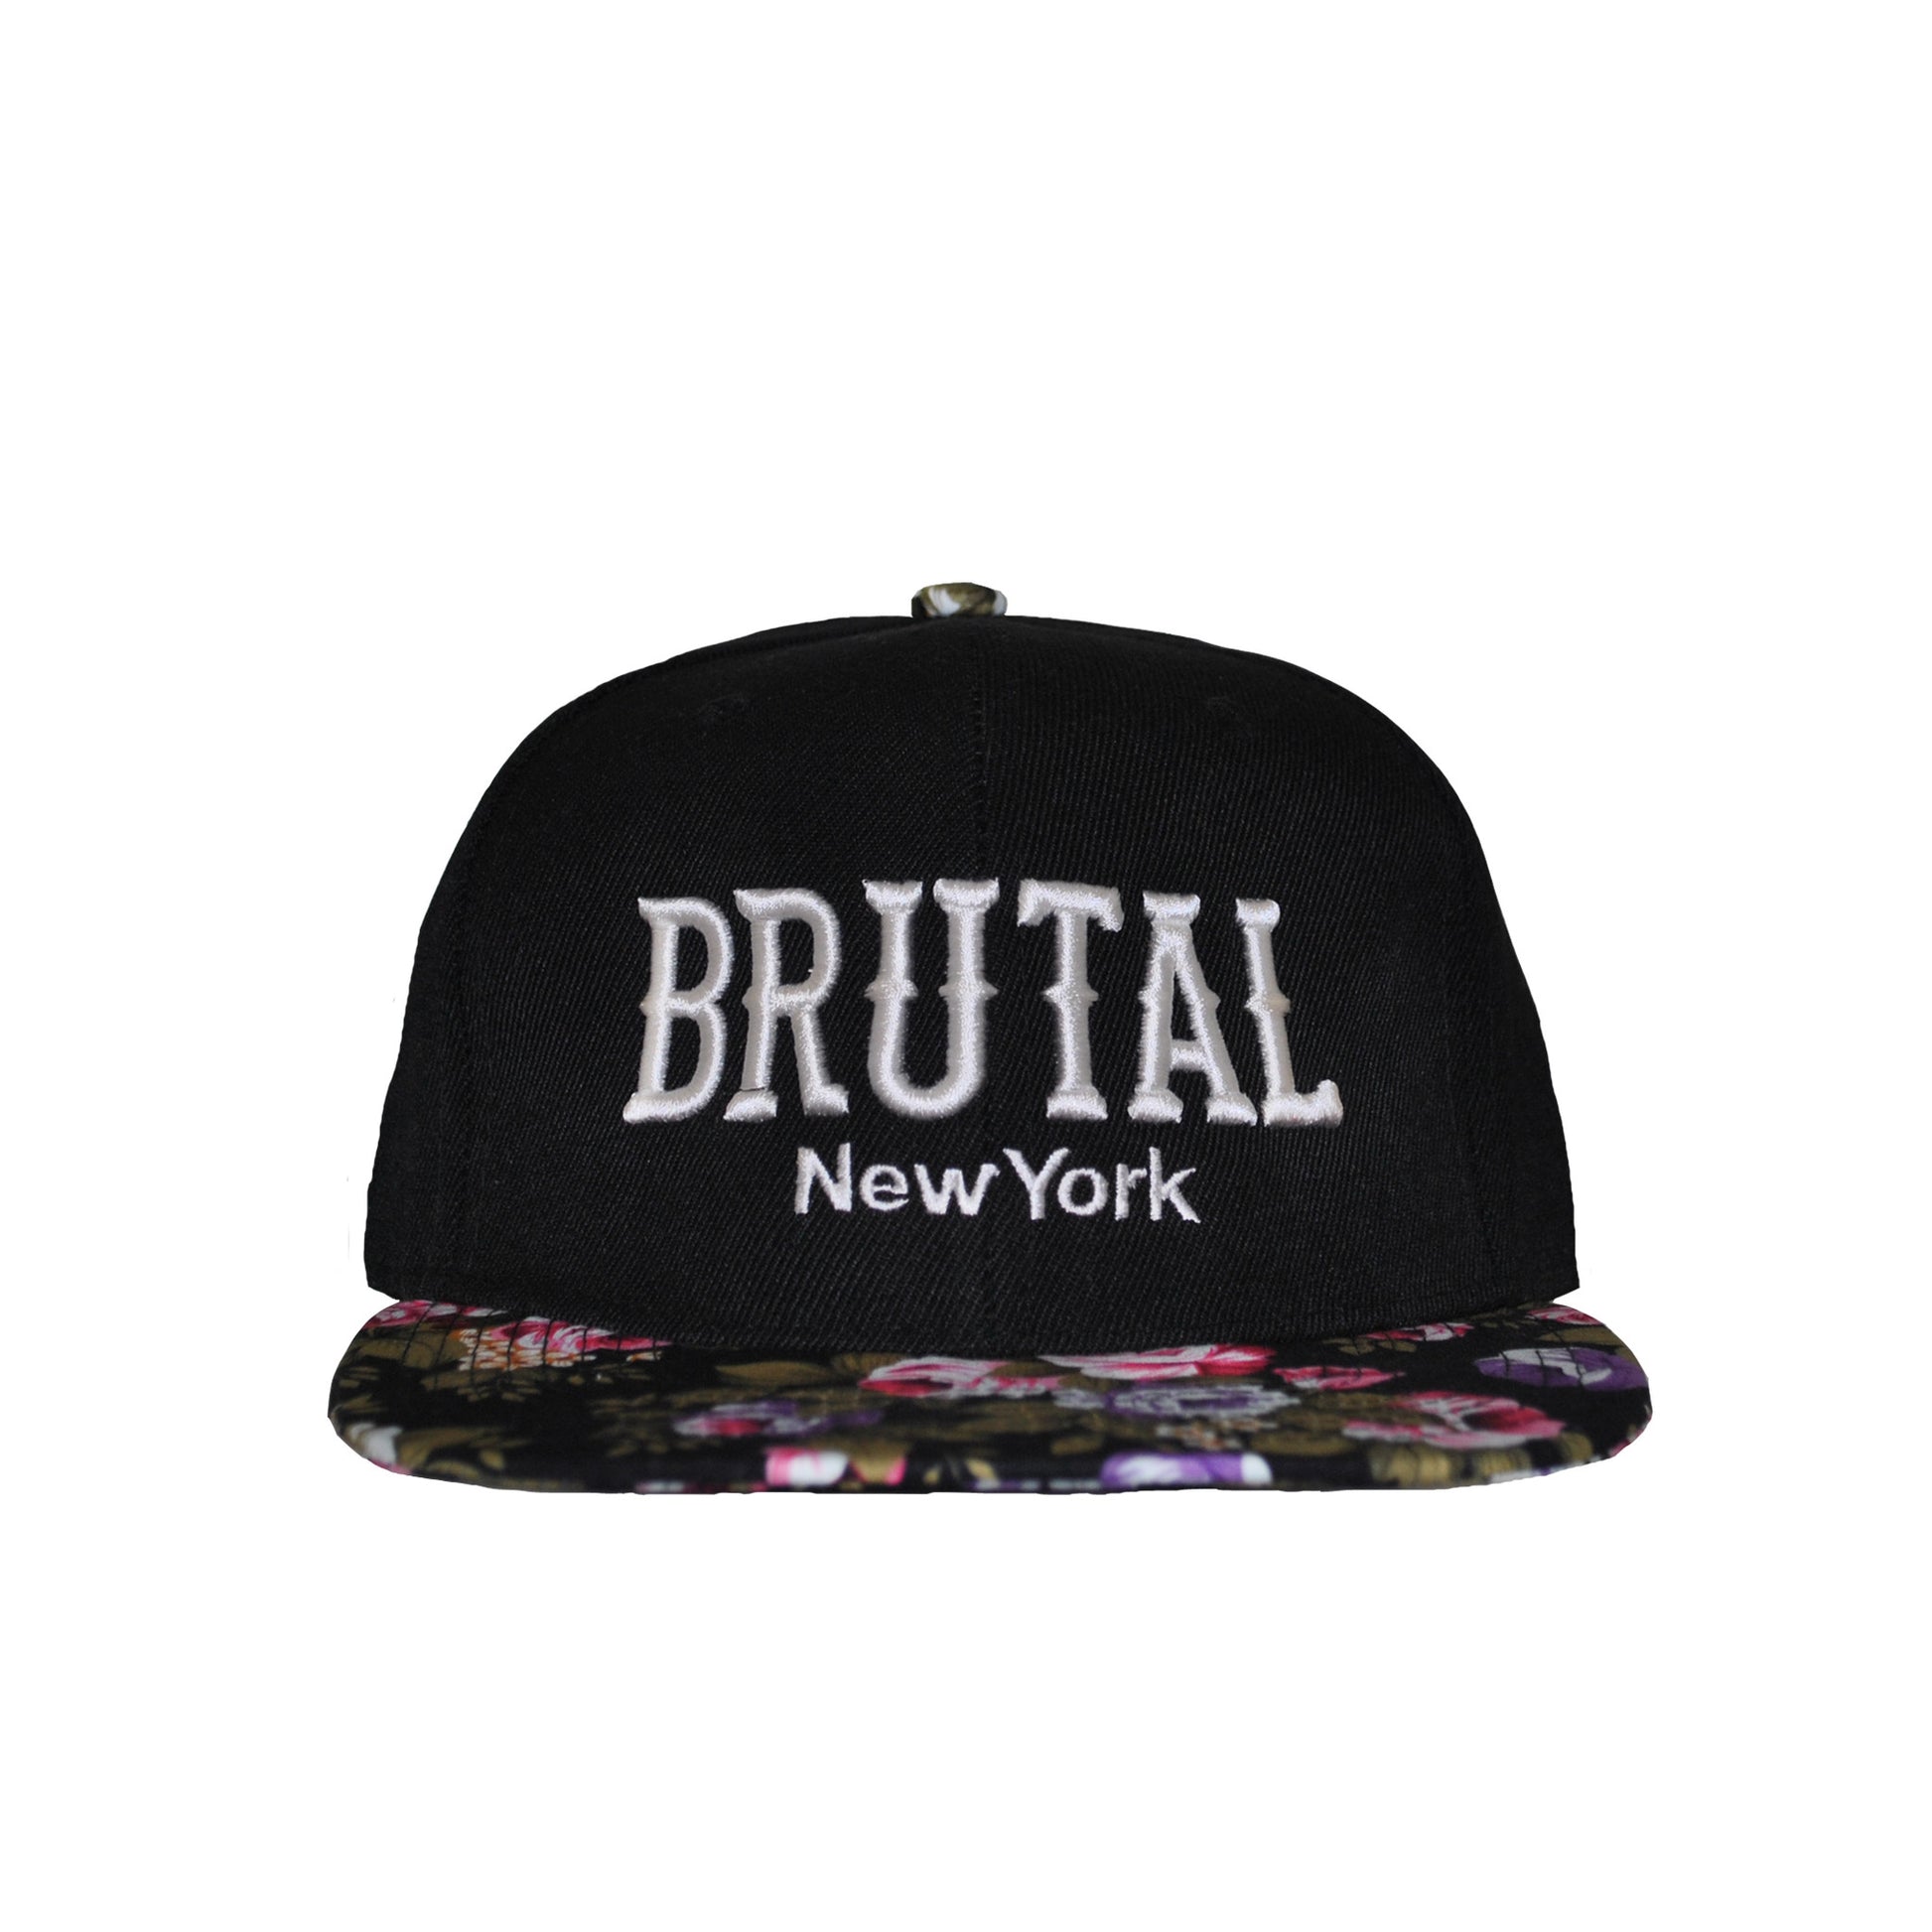 Brutal New York Floral Snapback (Last 1 left!) - Brutallic - 3